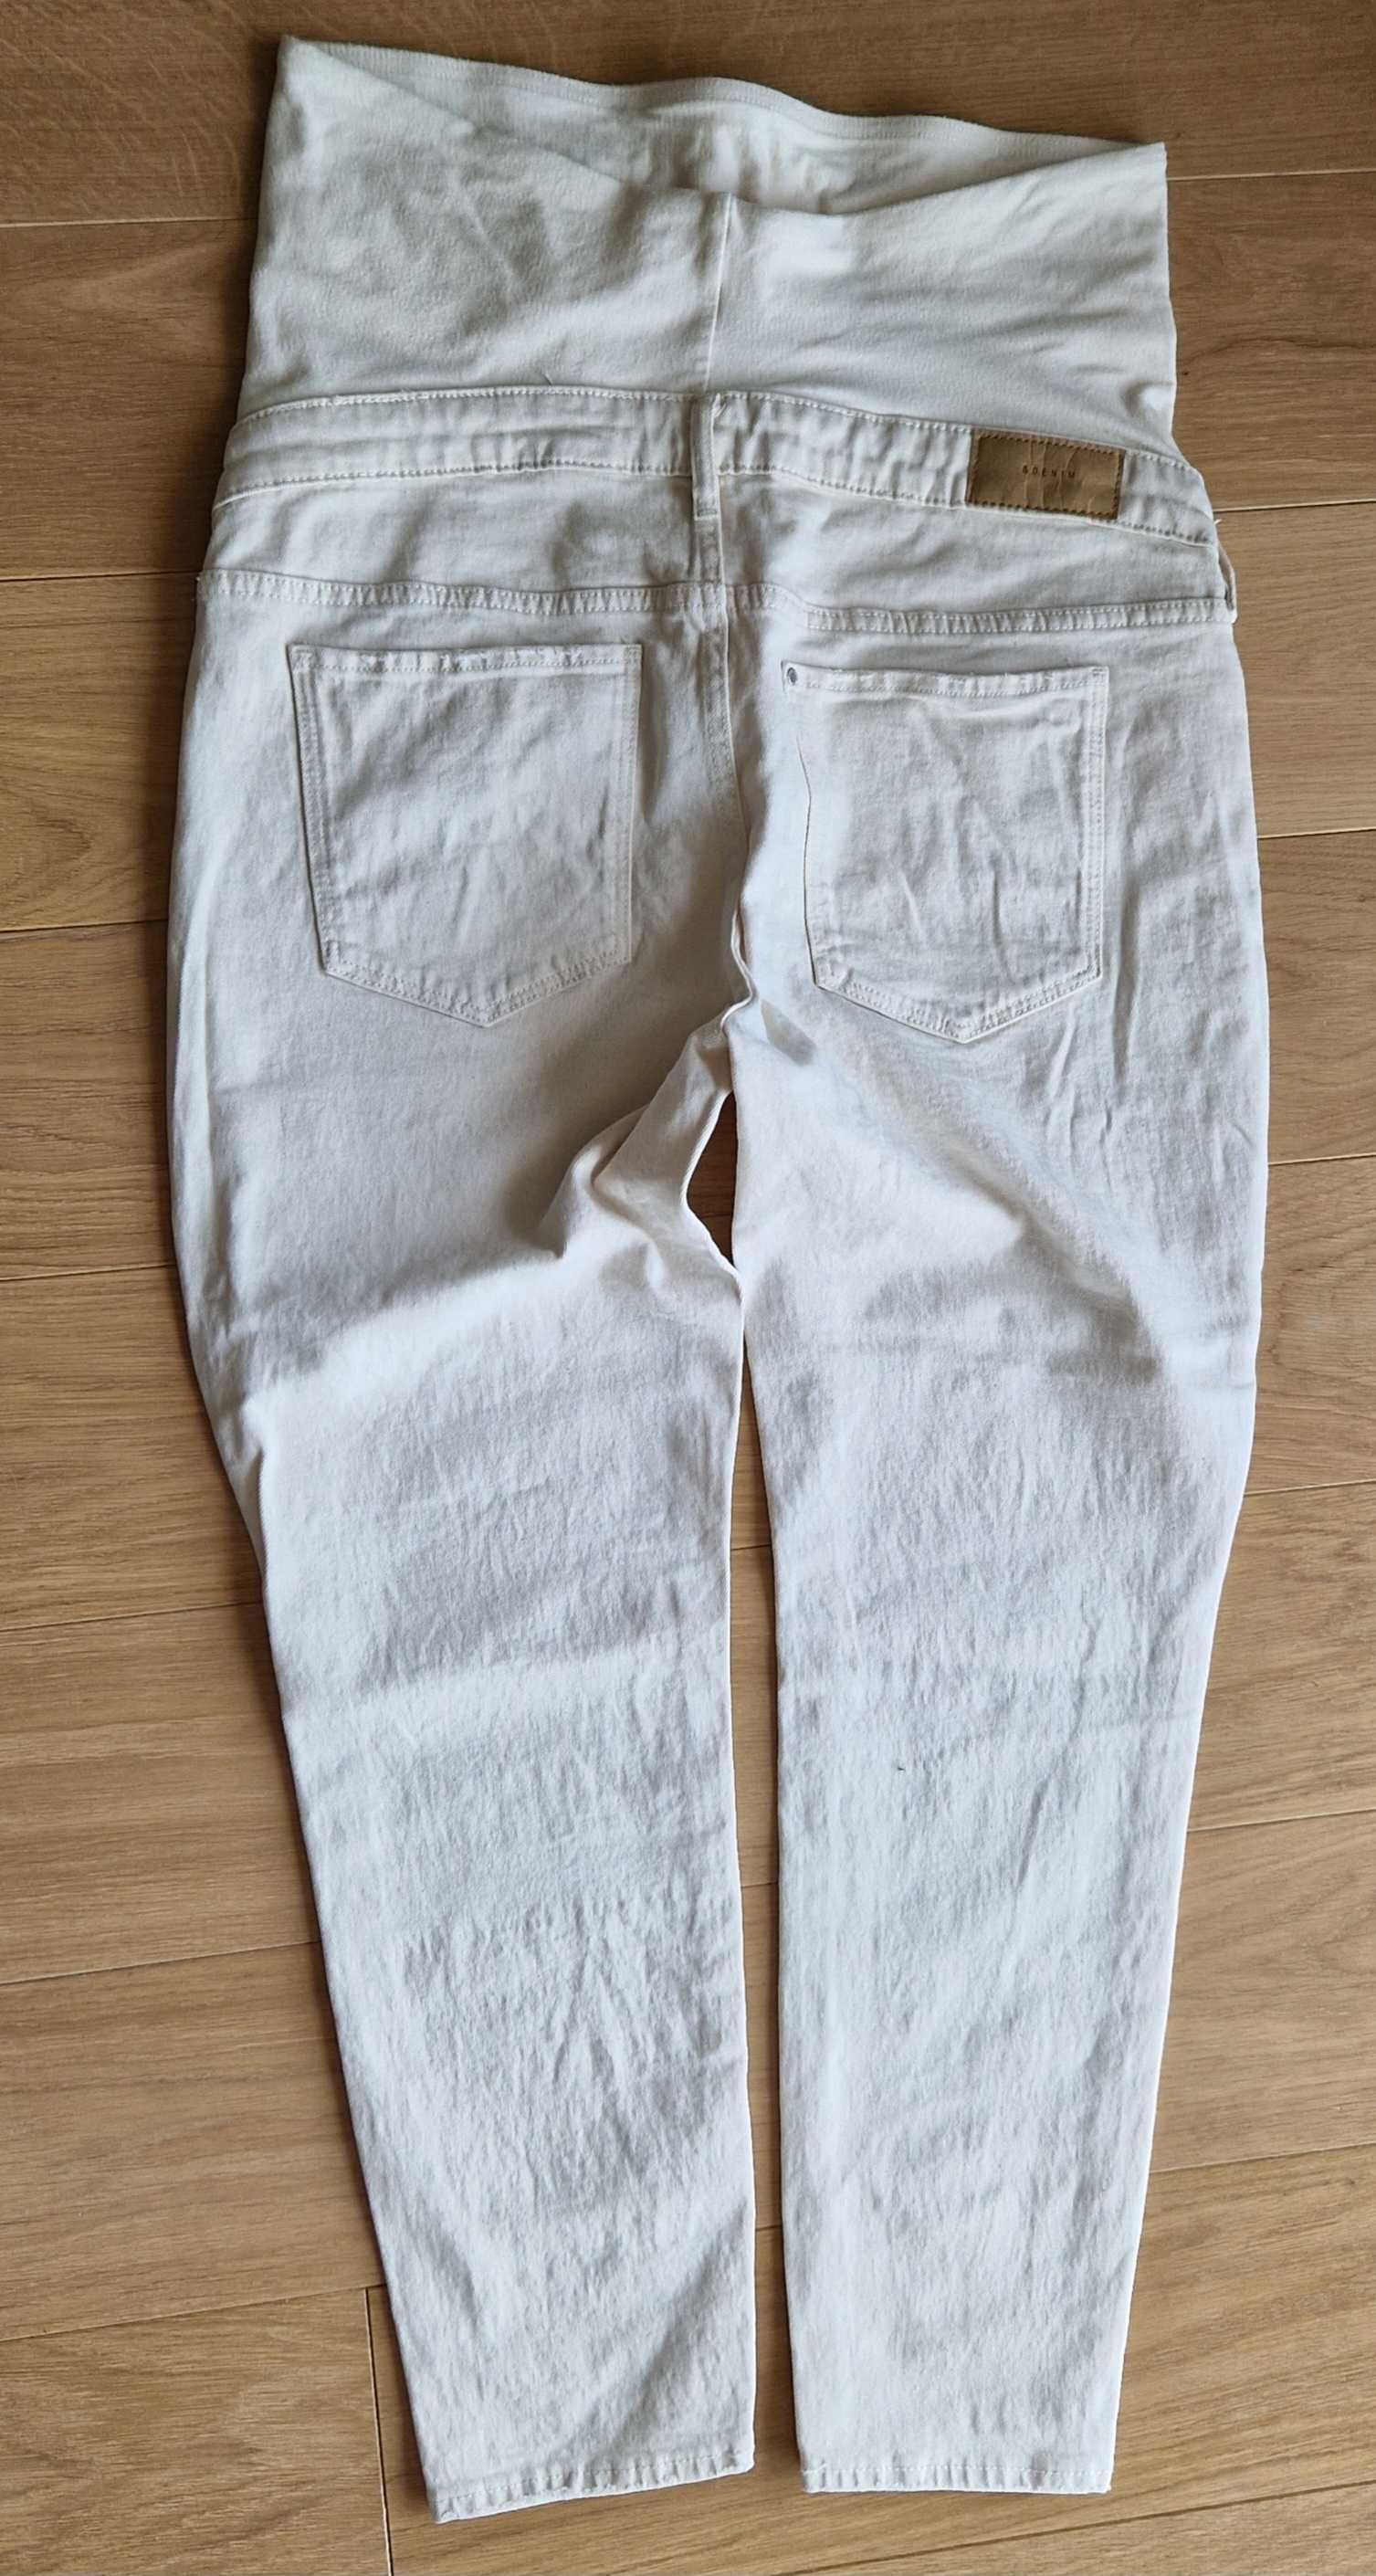 Białe jeansowe spodnie ciążowe, kupione w H&M, rozm.L, stan bdb